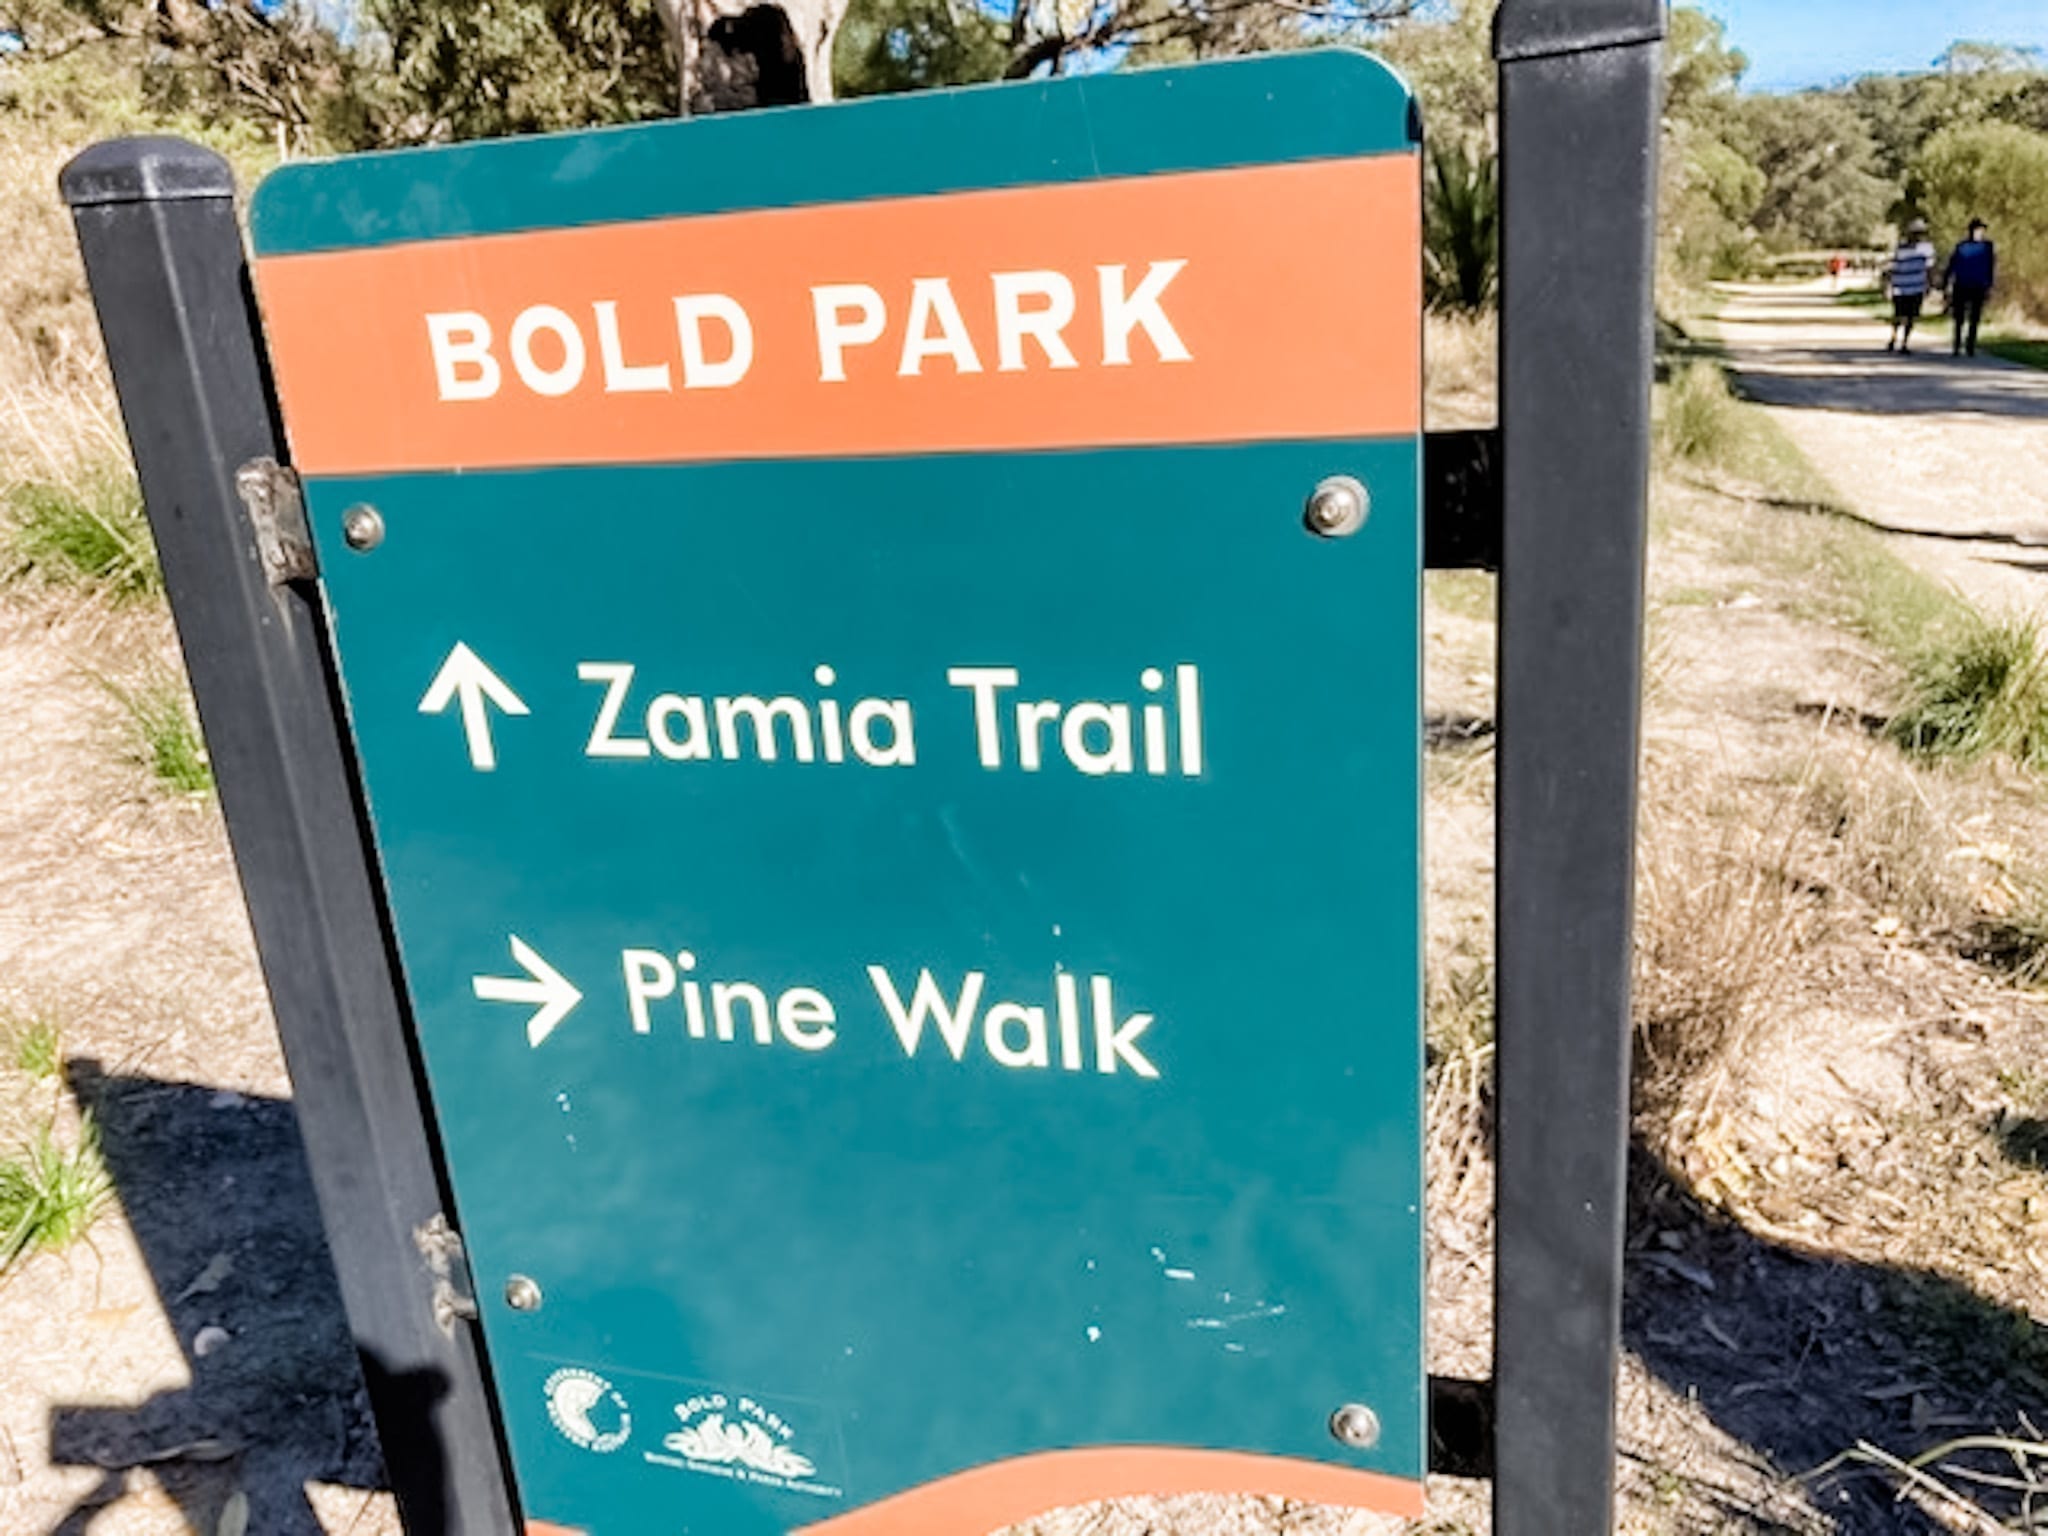 Zamia Trail